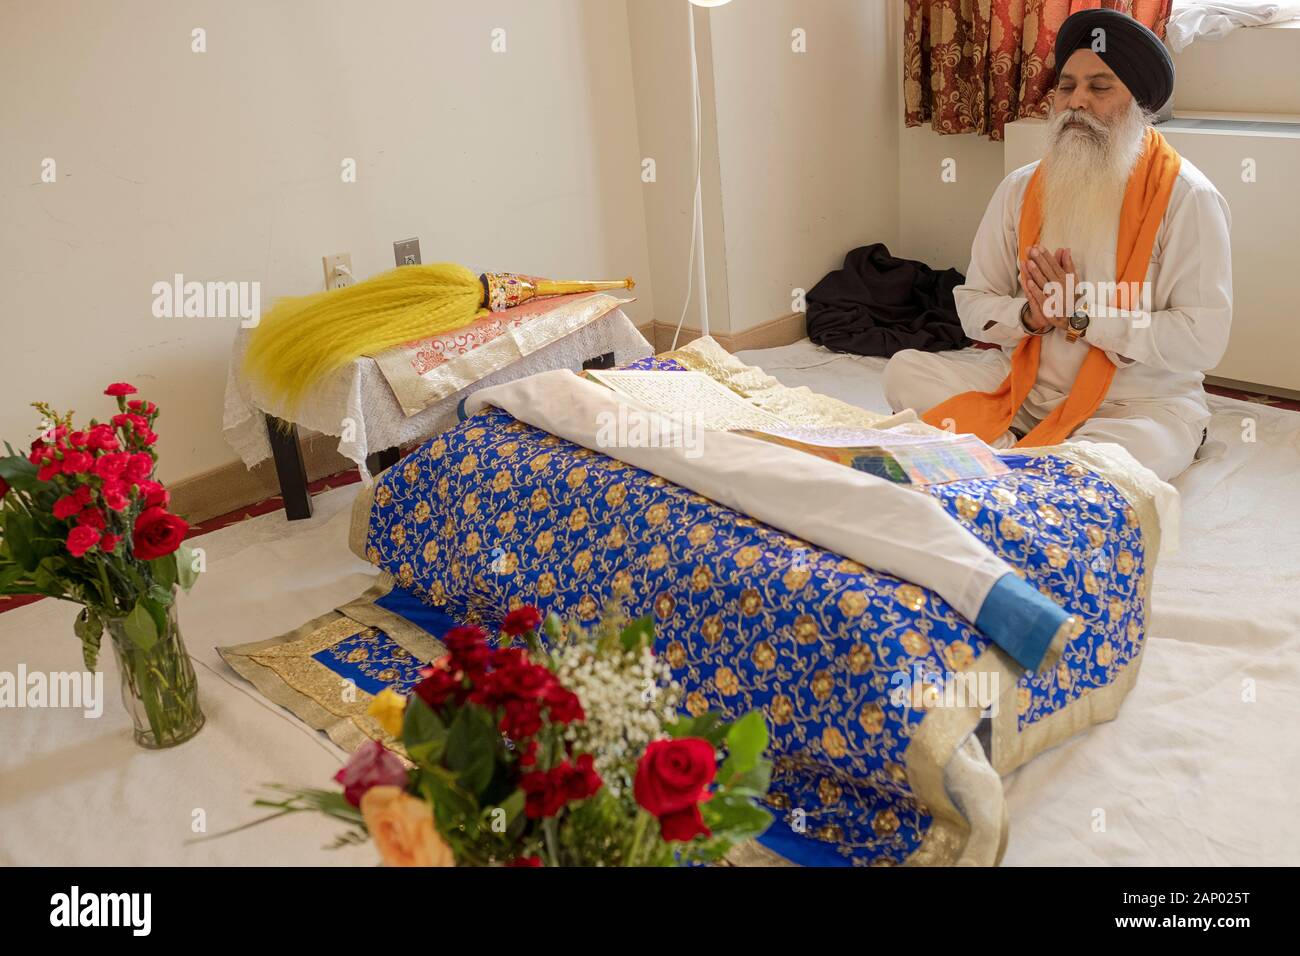 Un prêtre sikh assis lit à partir de la Sainte Écriture, le Gugru Granth Sahib. Dans un temple à Richmond Hill, Queens, New York. Banque D'Images